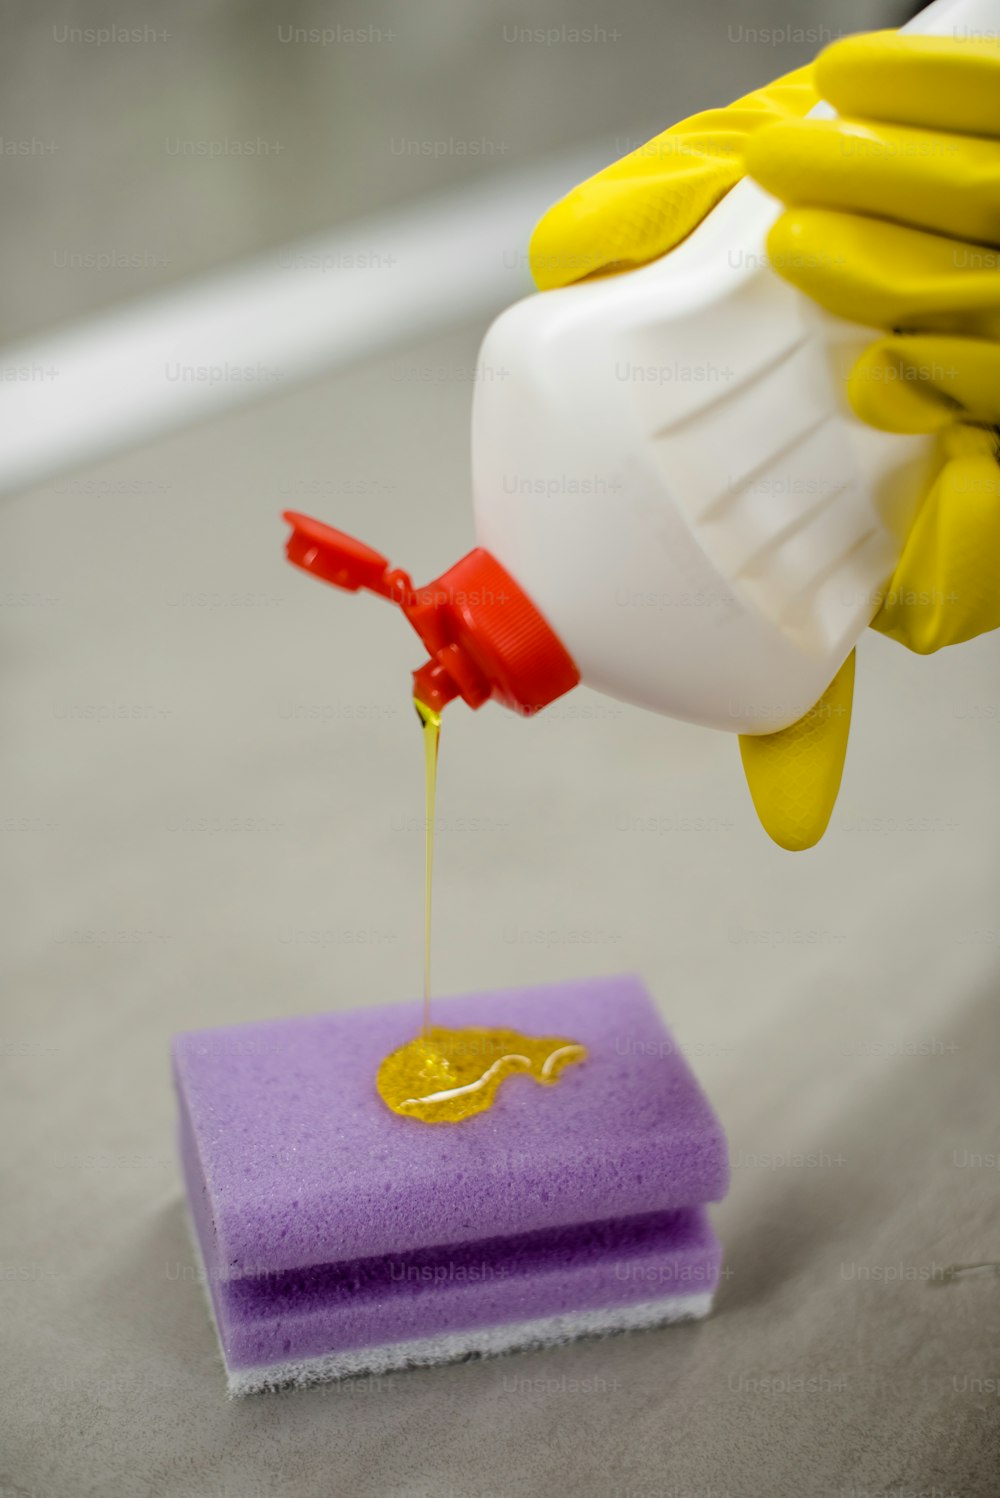 Una persona con guantes amarillos está vertiendo líquido amarillo sobre una esponja